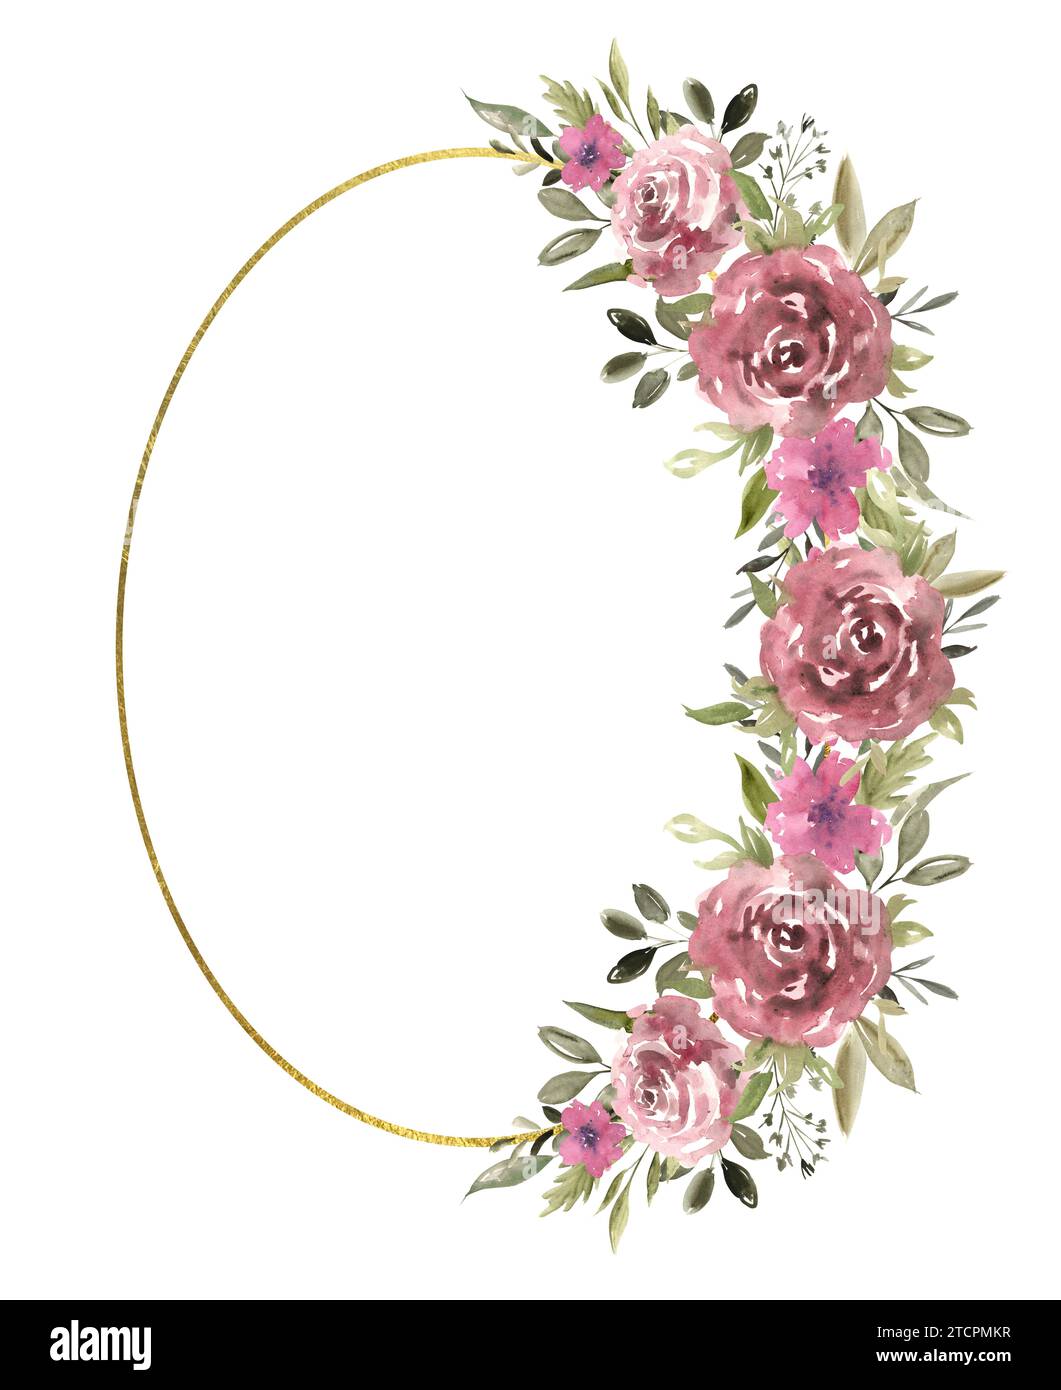 Cadre ovale floral avec de belles roses et de la verdure, cadre de texture dorée. Illustration à l'aquarelle dessinée à la main du modèle botanique pour l'accueil Banque D'Images